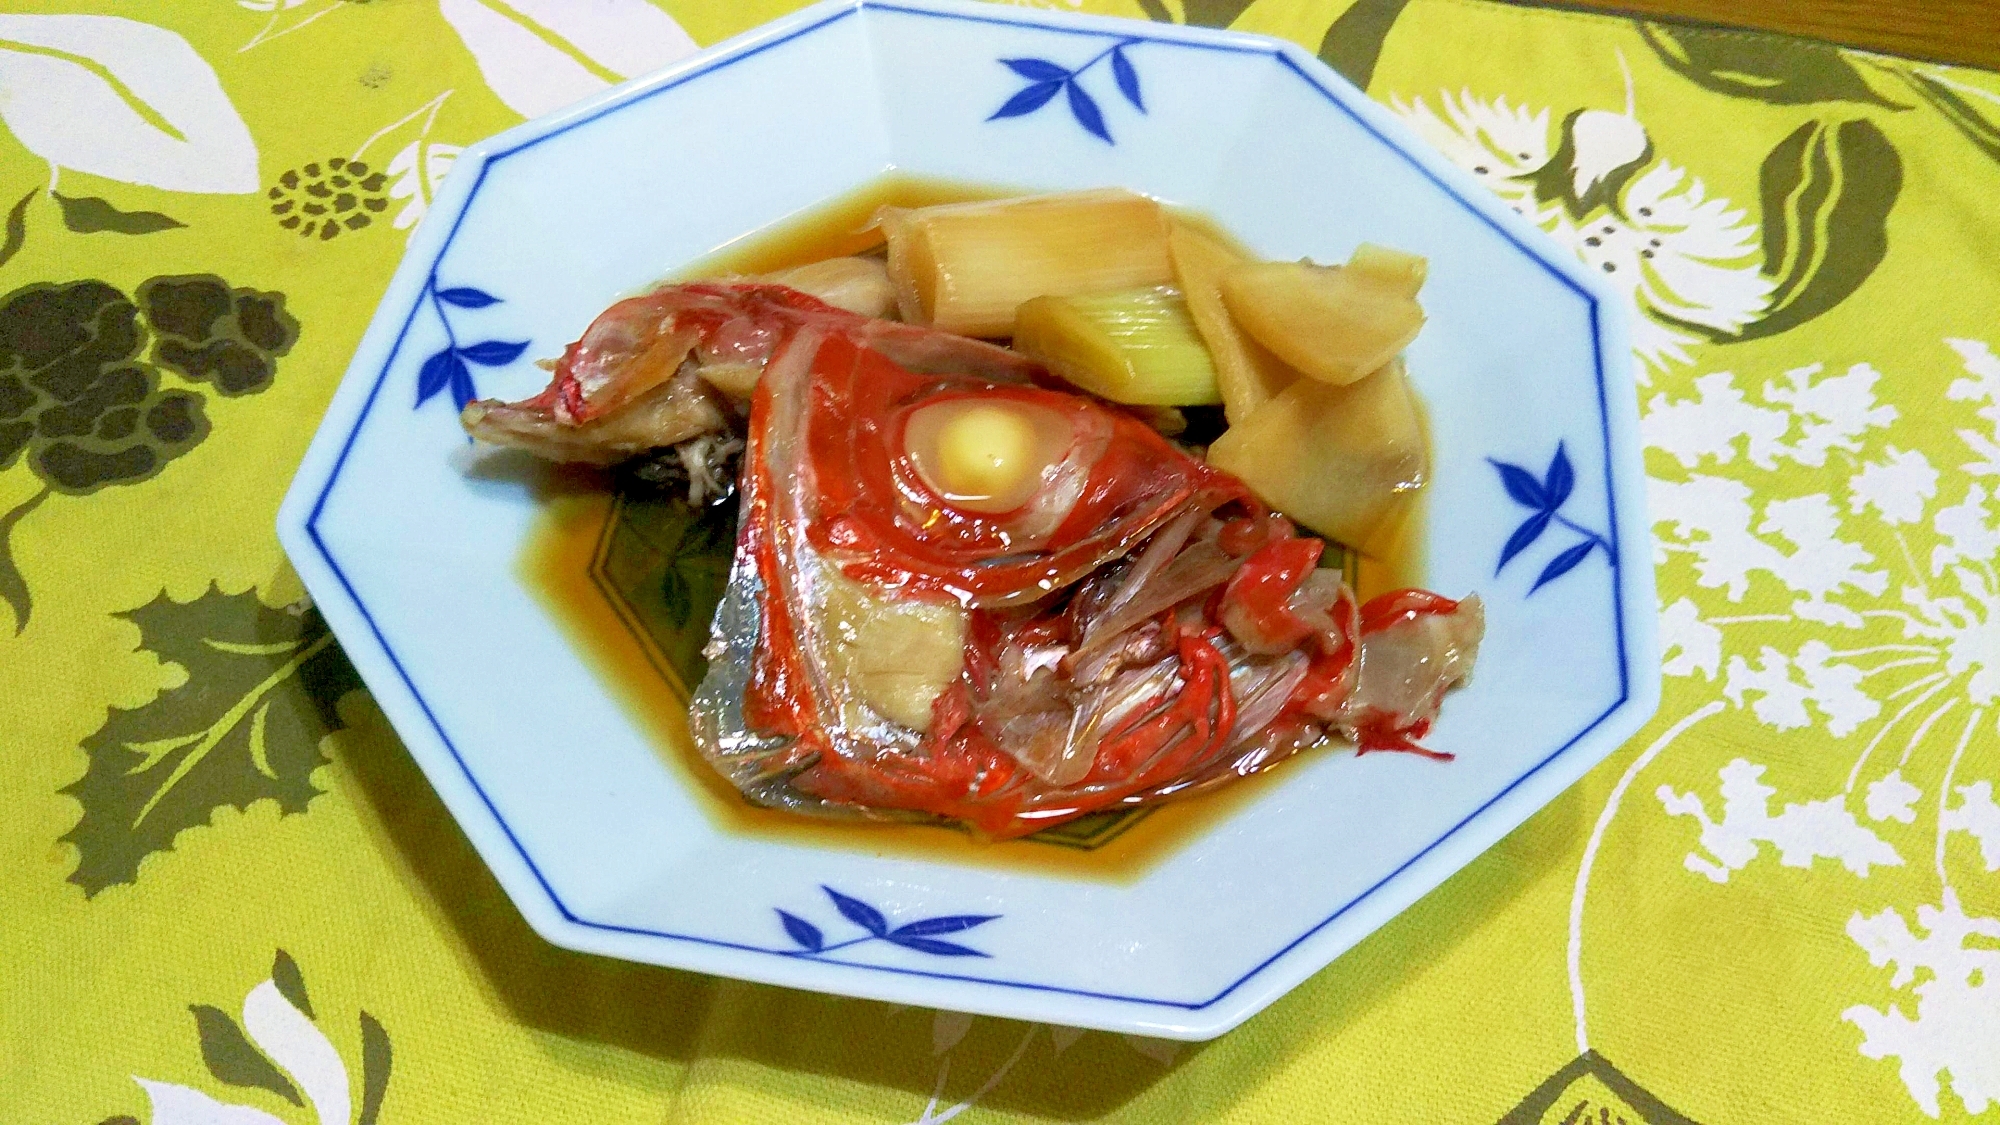 金目鯛・新生姜・葱の煮物